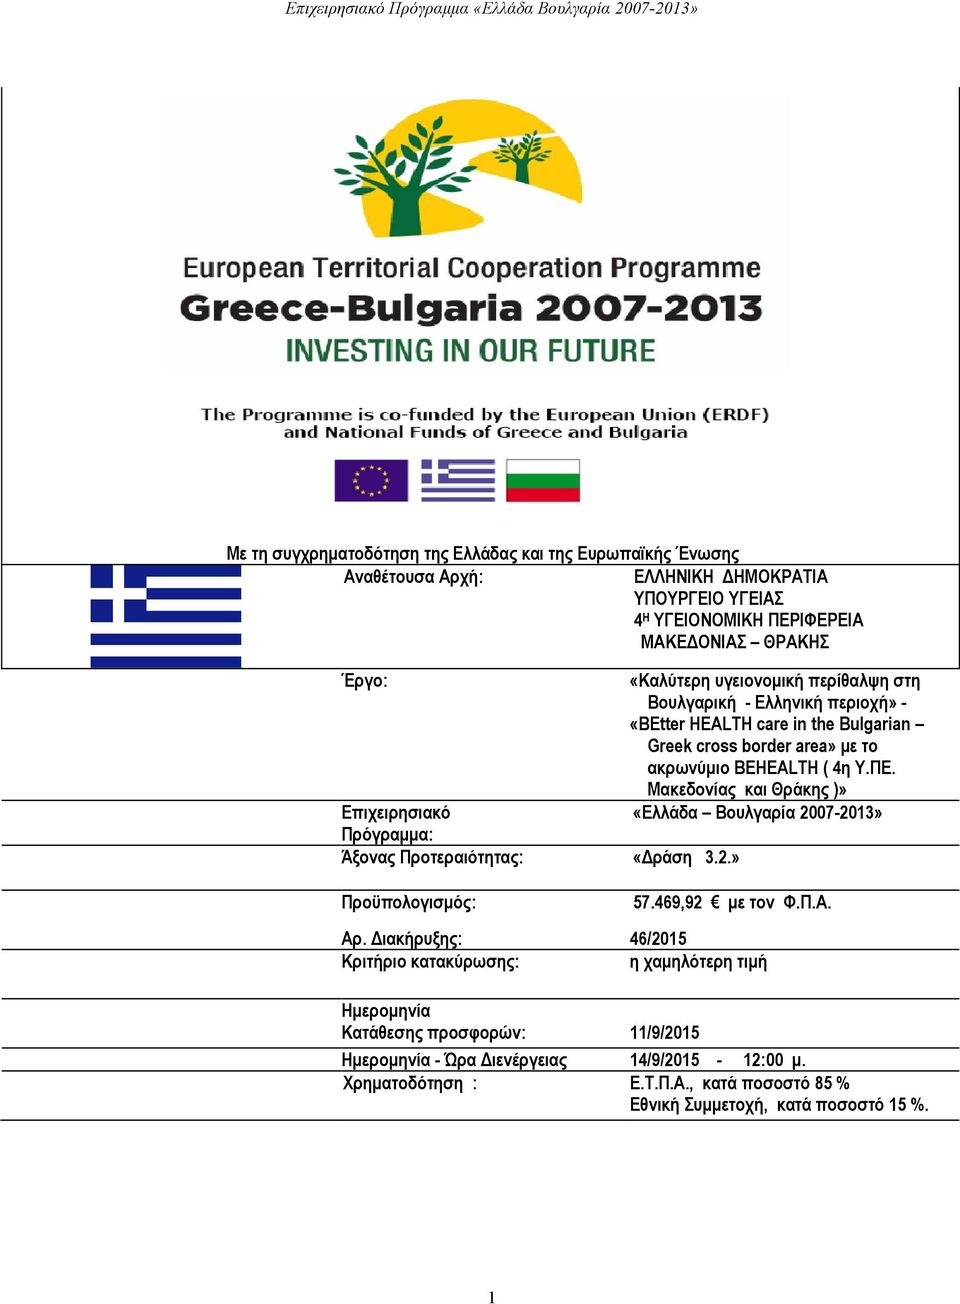 Μακεδονίας και Θράκης )» Επιχειρησιακό «Ελλάδα Βουλγαρία 2007-2013» Πρόγραμμα: Άξονας Προτεραιότητας: «Δράση 3.2.» Προϋπολογισμός: 57.469,92 με τον Φ.Π.Α. Αρ.